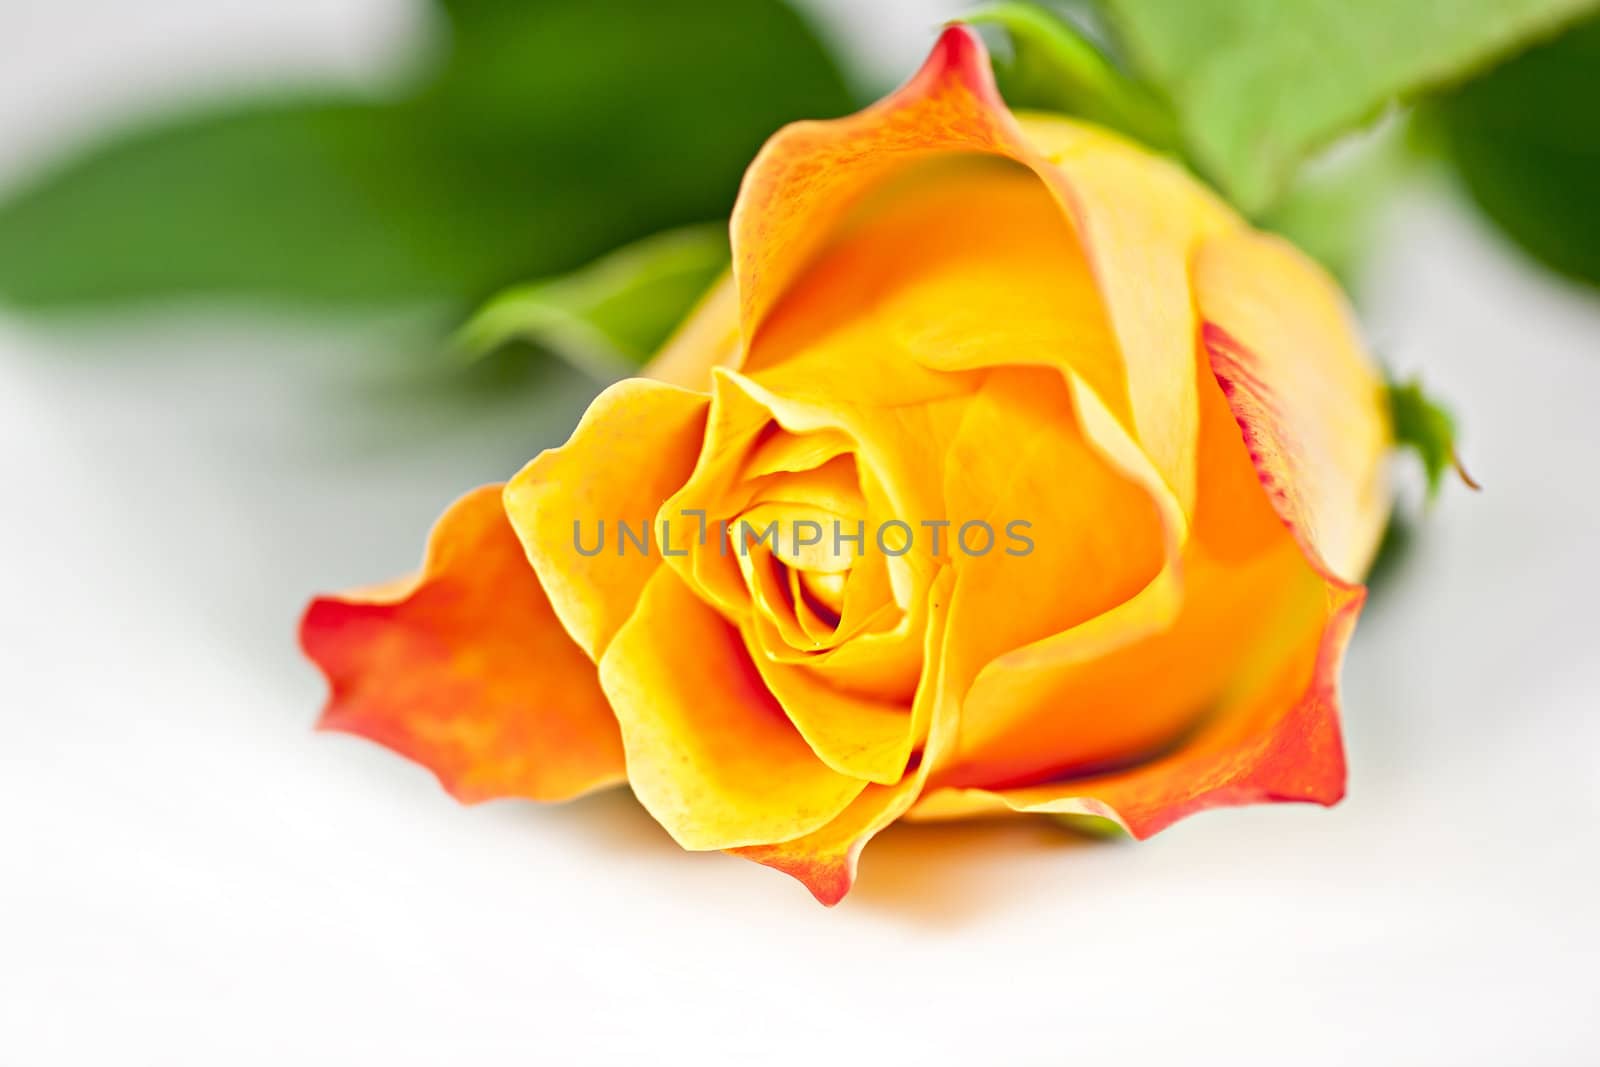 On a white background orange rose, macro photography.